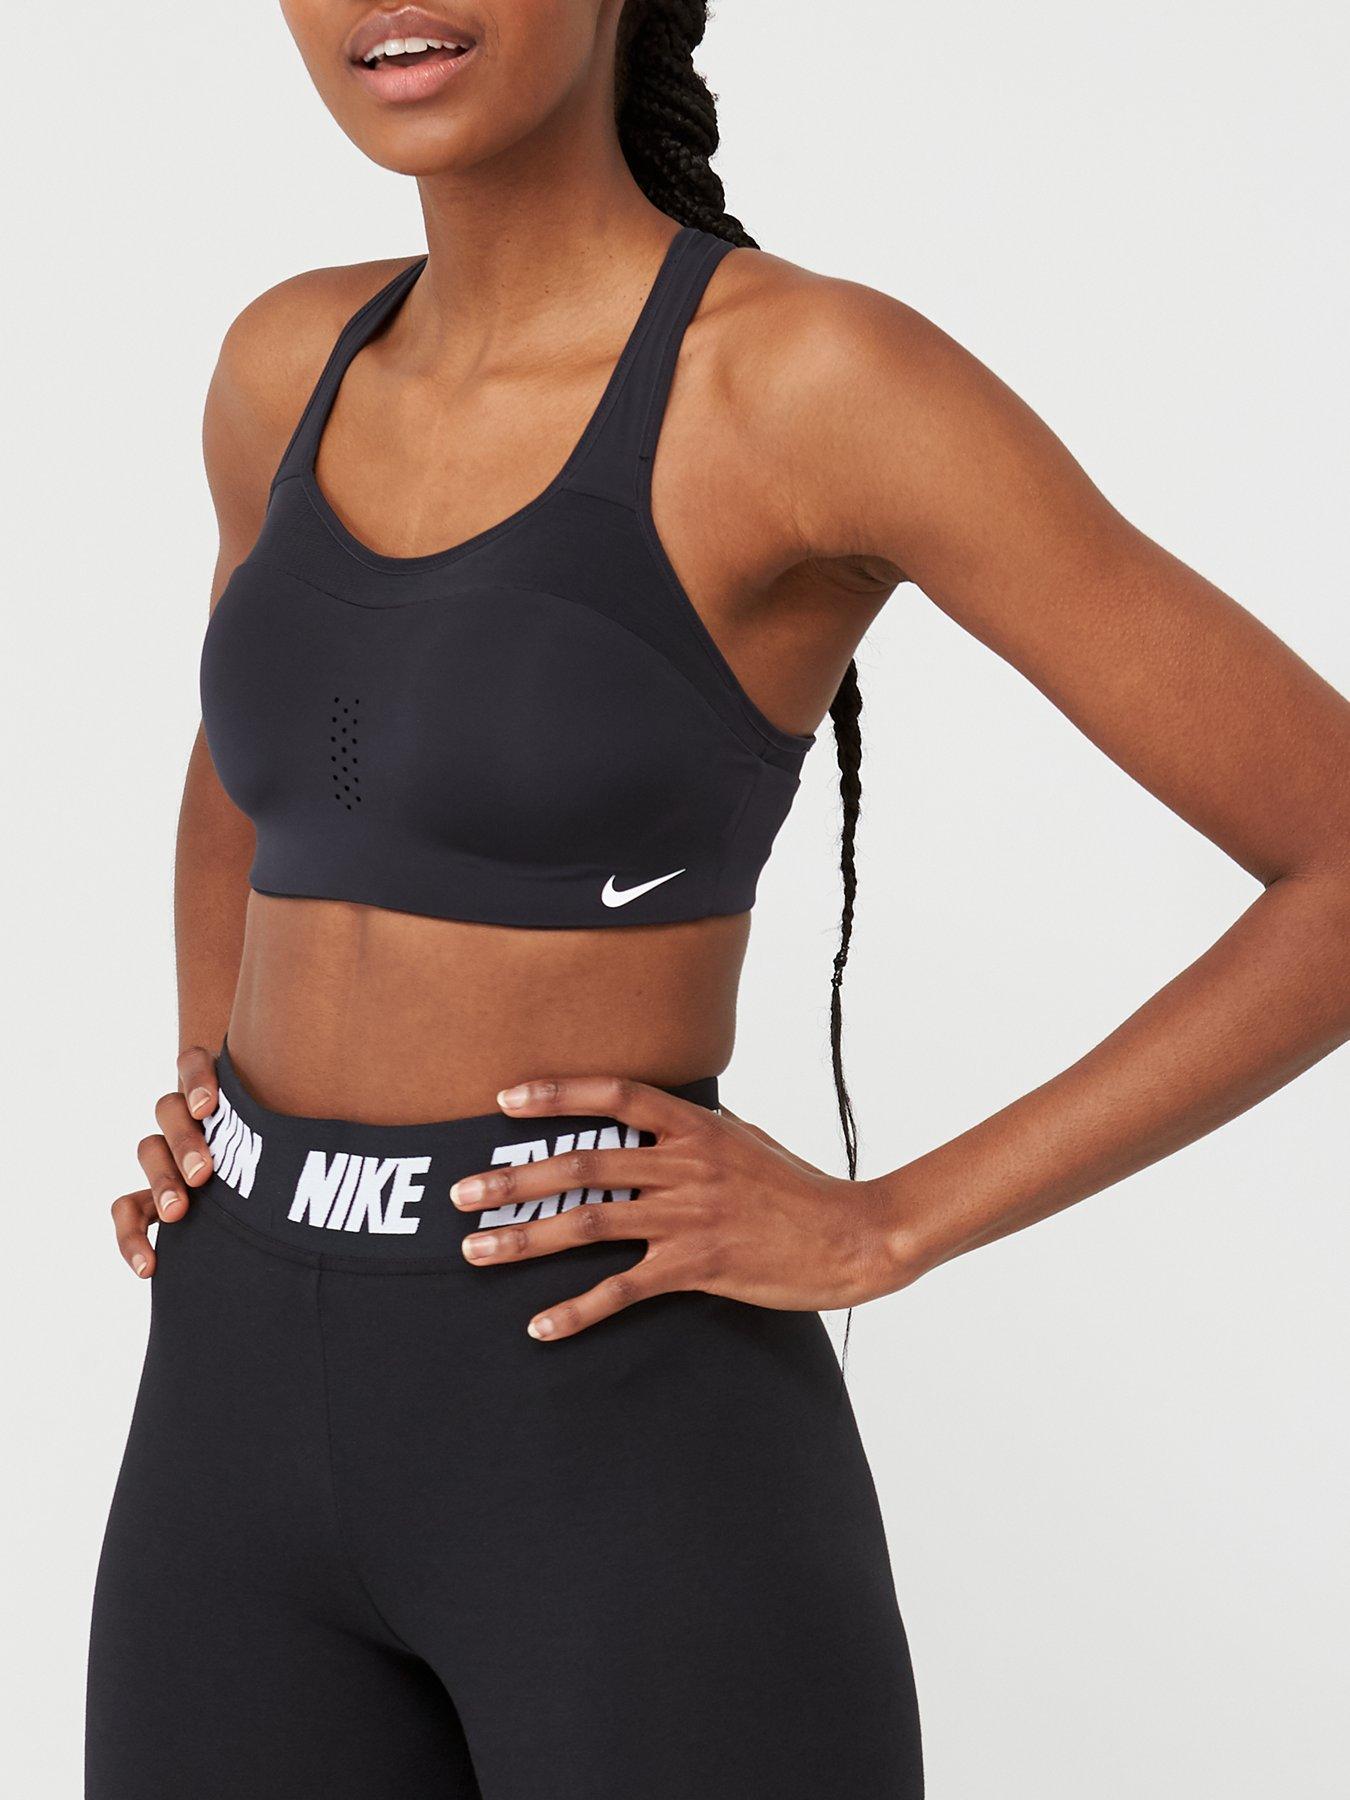 Nike Alpha High Support Dri-Fit Sports Bra Women's XS (A-C) Black AJ0340-010